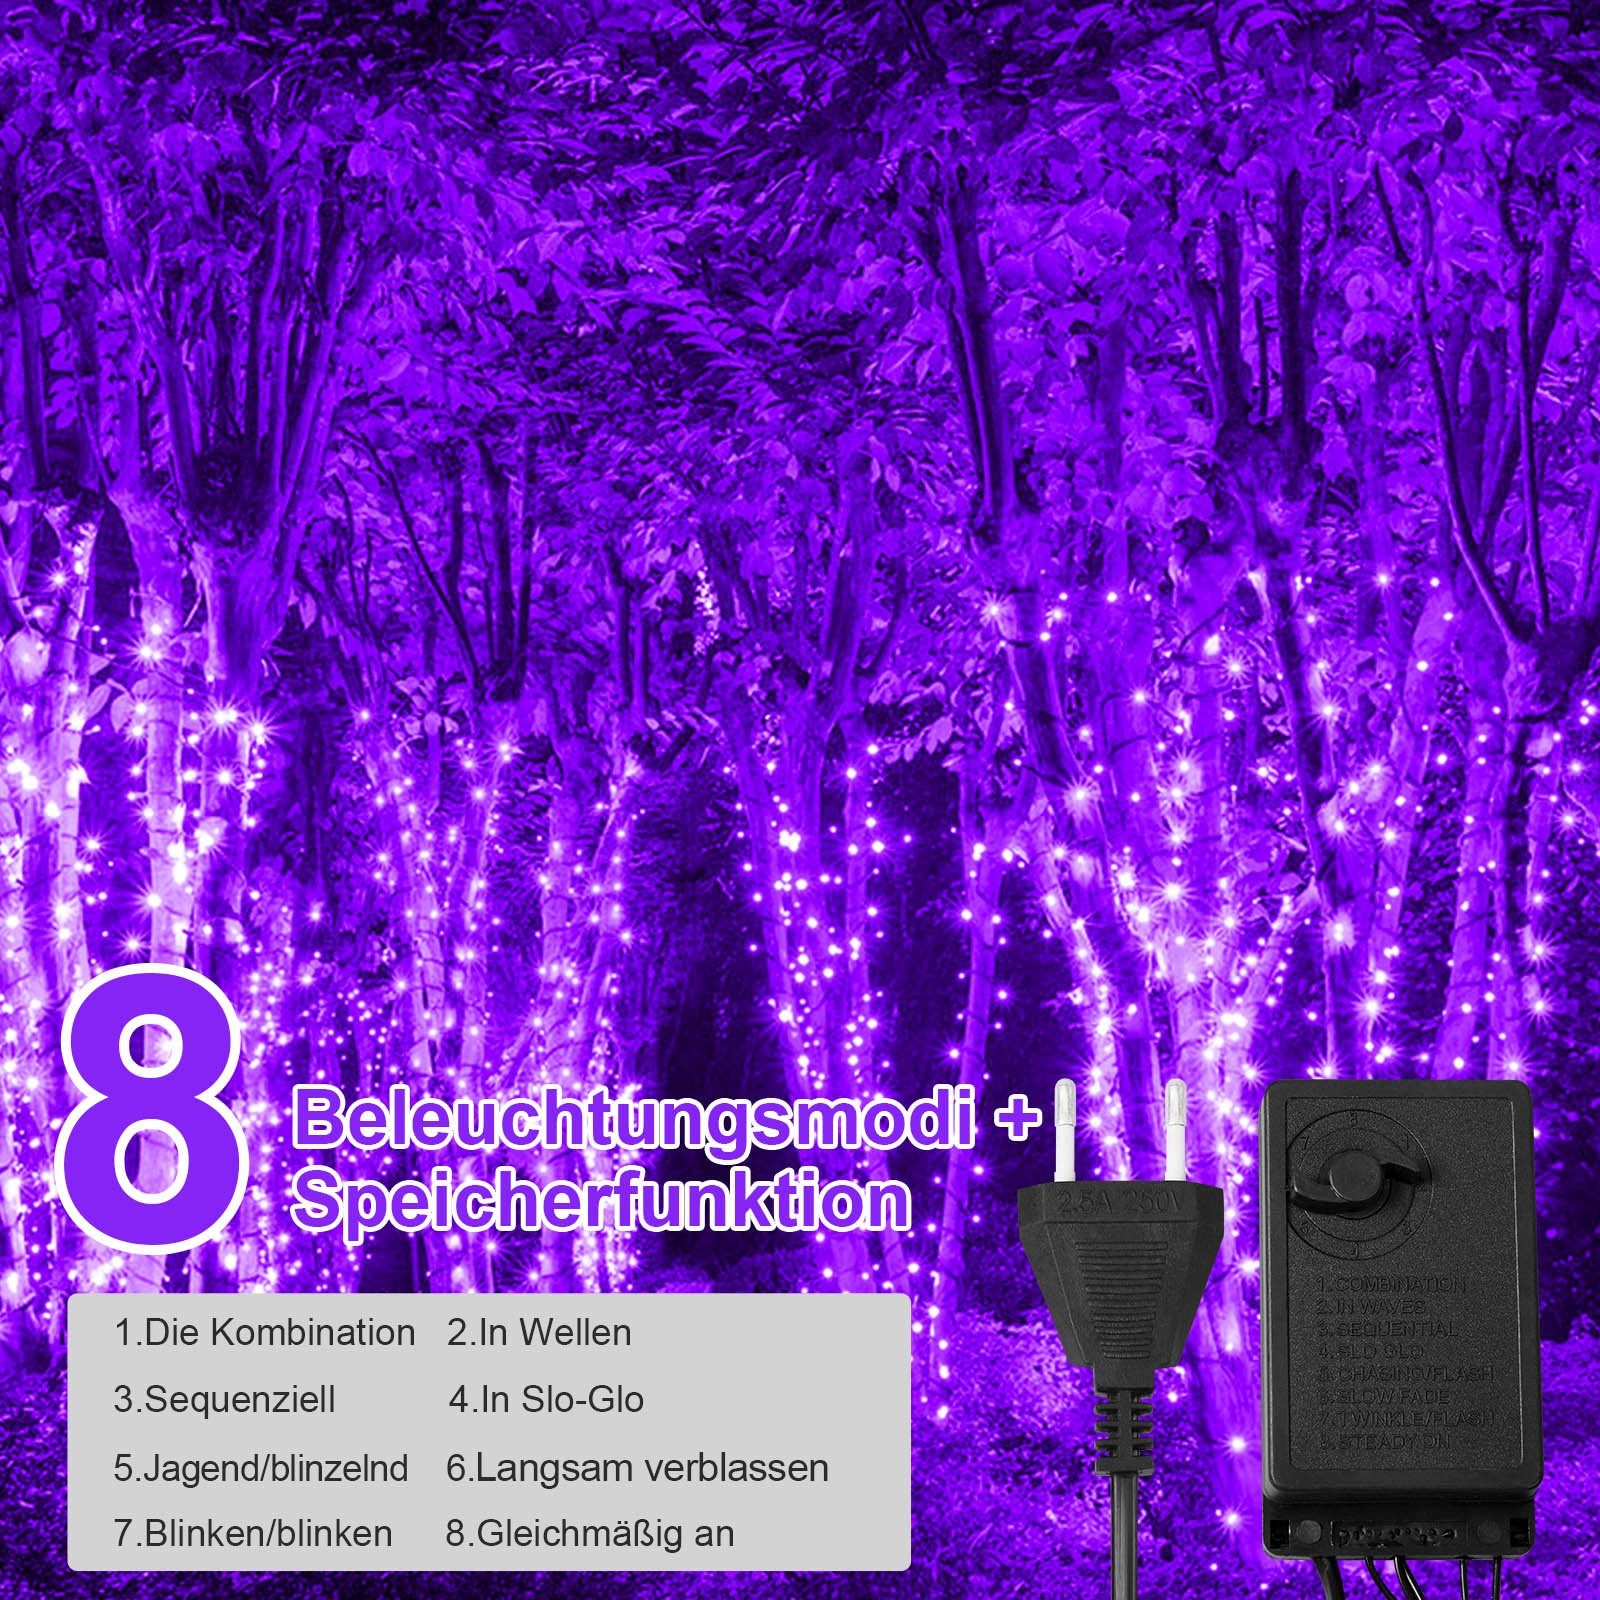 Rosnek Lila Kabel, Spulenverpackung 240LEDs, für wasserdicht, Garten 50M, Deko, Weihnachtsbaum 8 Speicherfunktion, LED-Lichterkette Modi, schwarzes